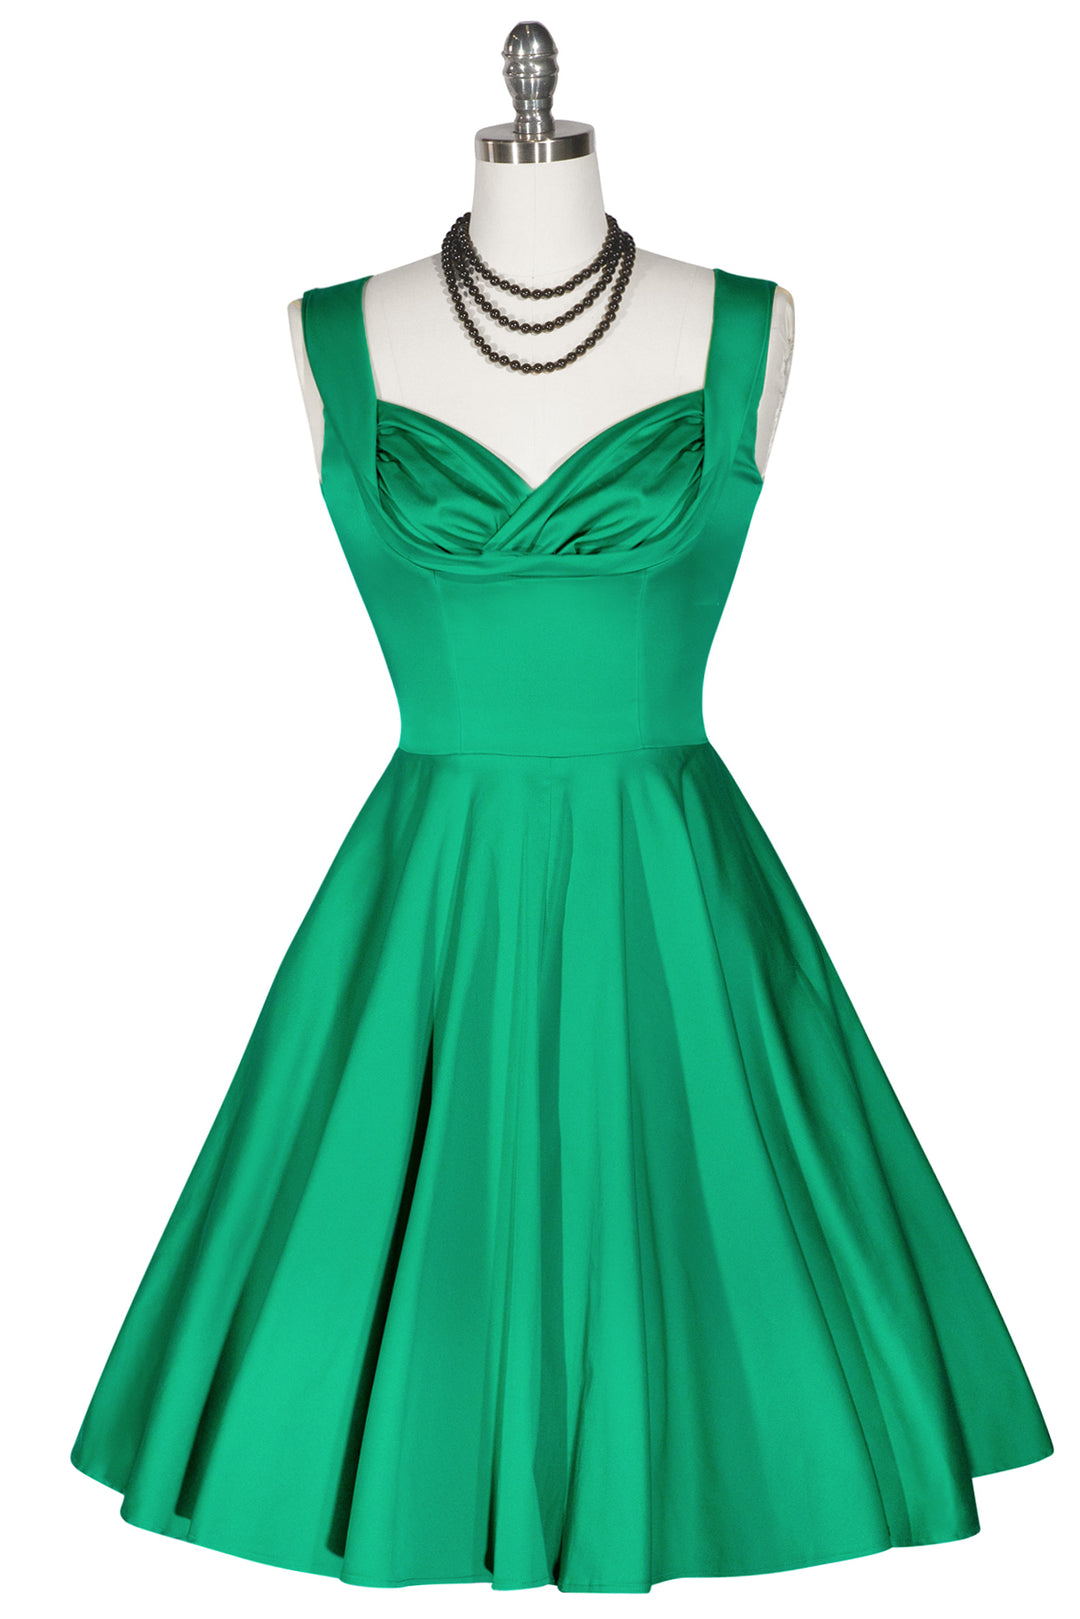 D'Amour Seaside Classic Dress (Green) - Kitten D'Amour